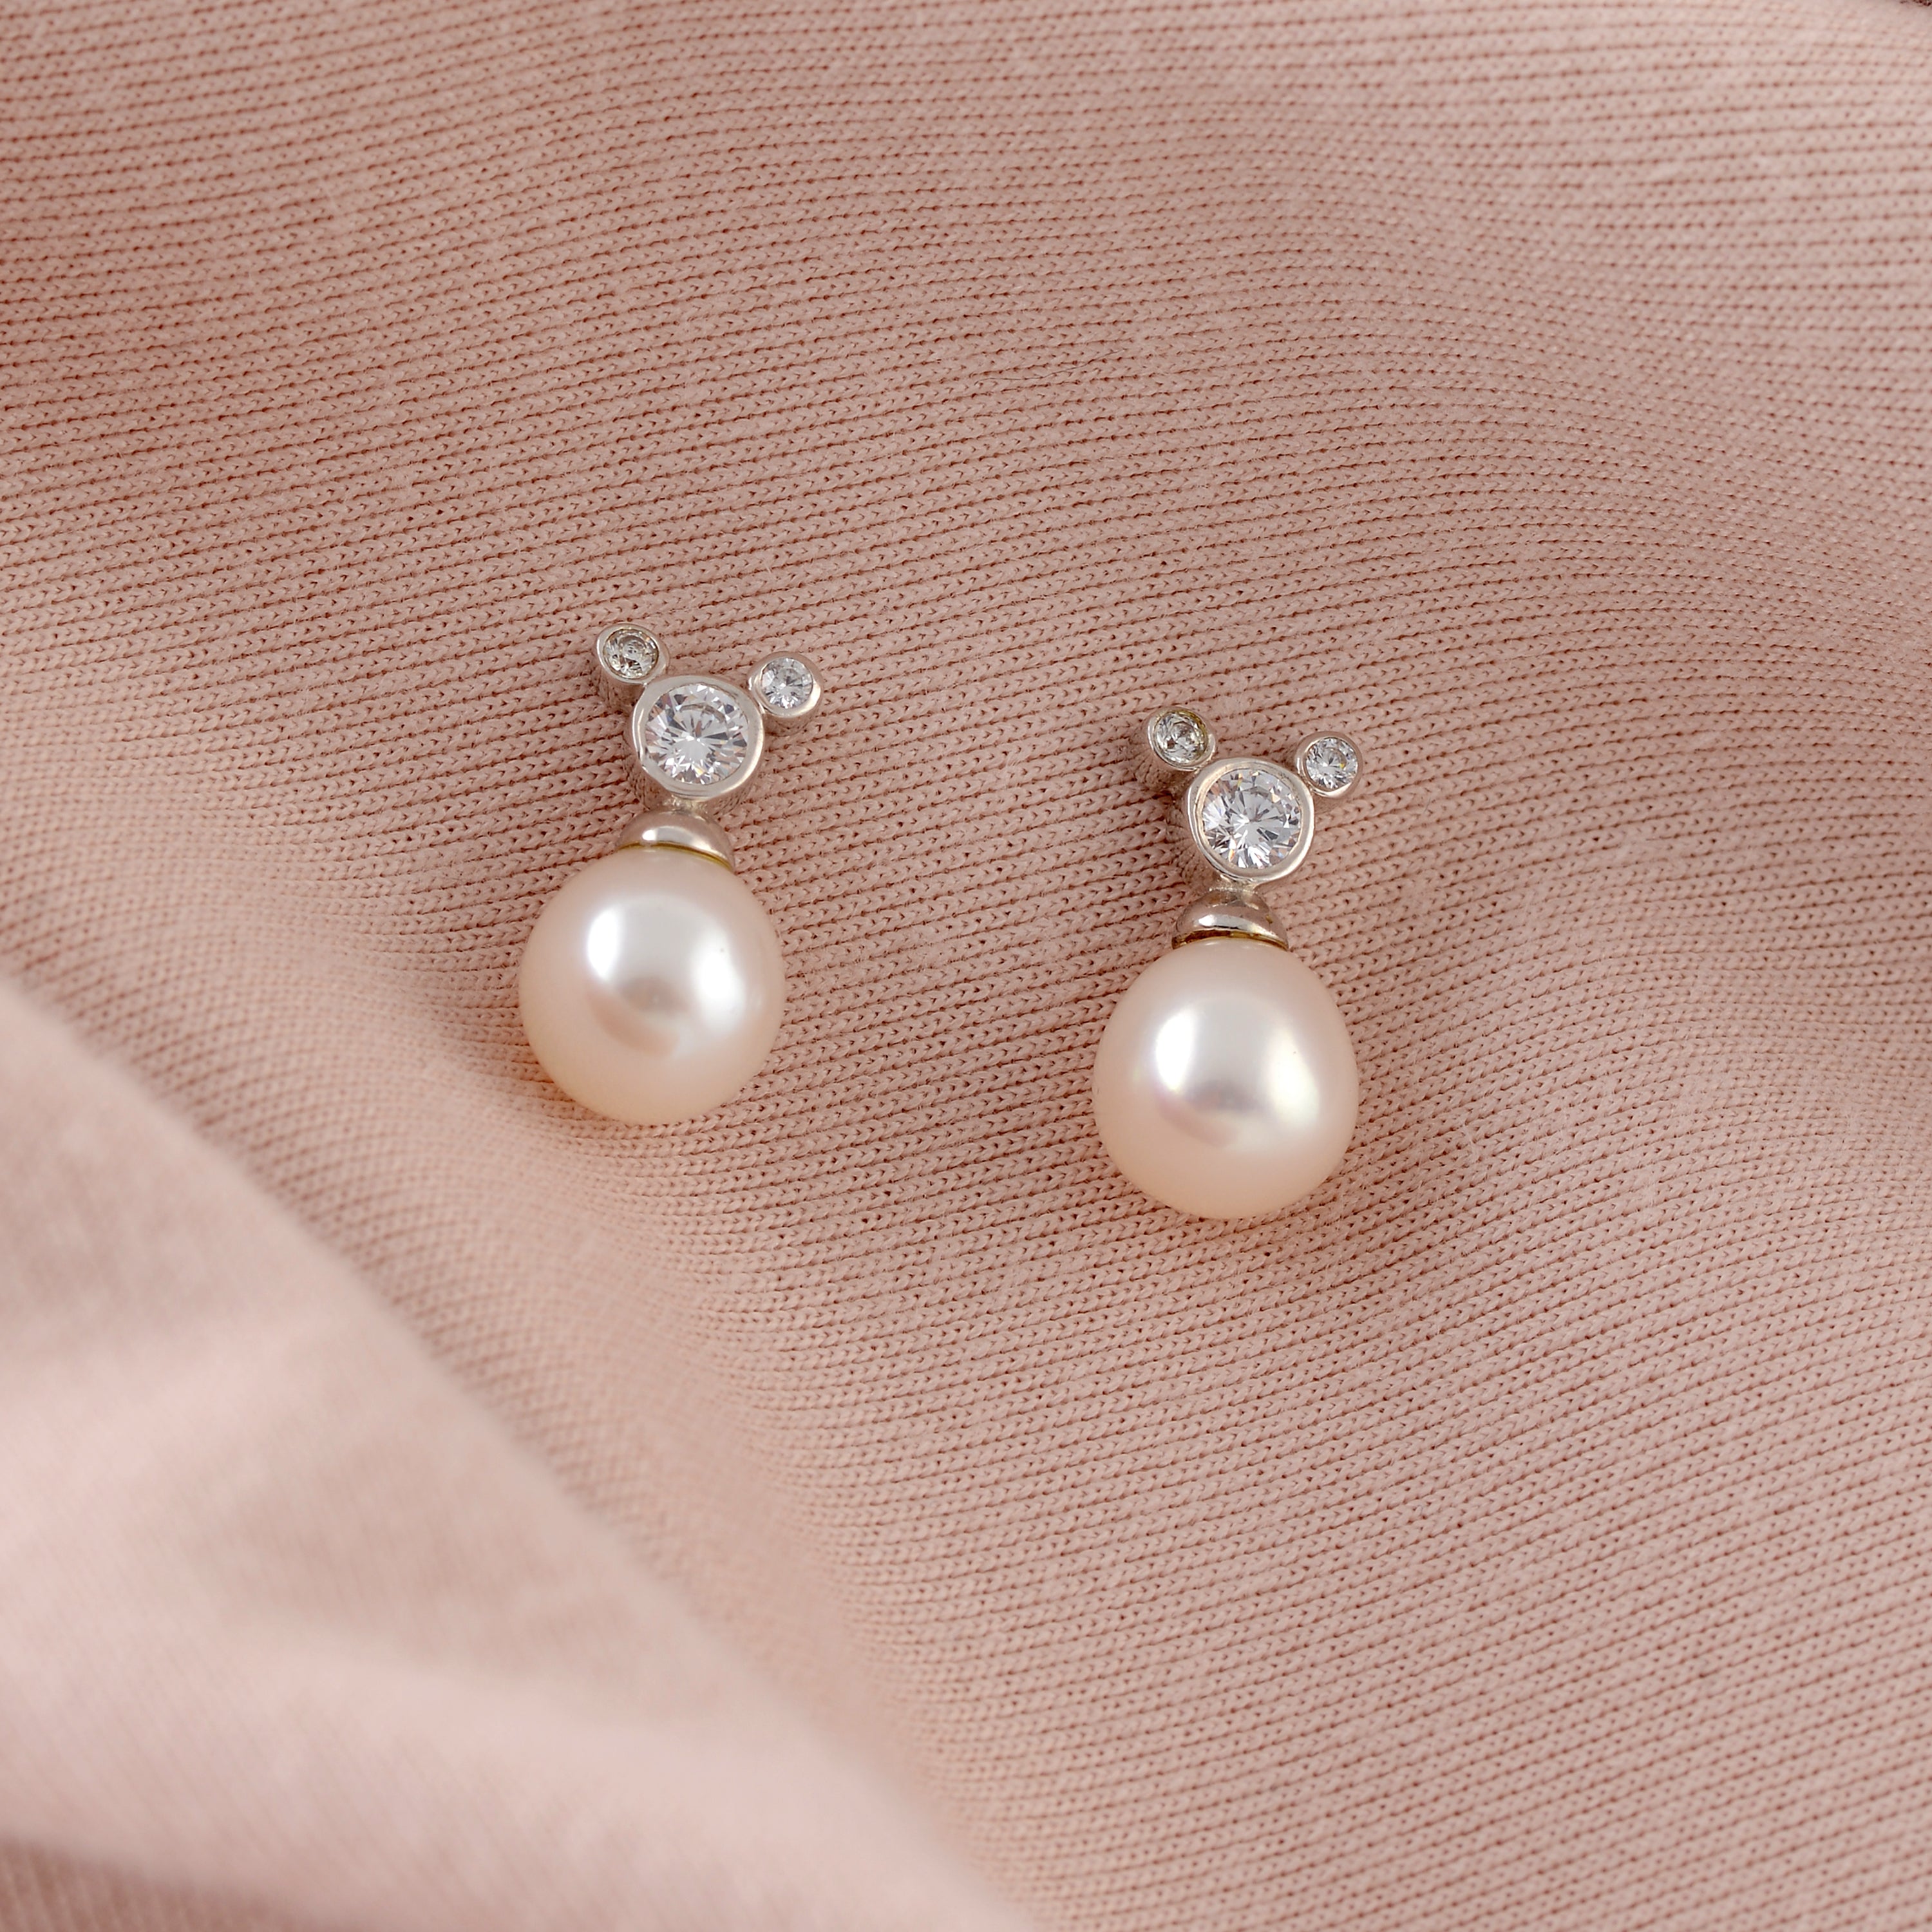 Classic Pretty White Pearl Stud Earring